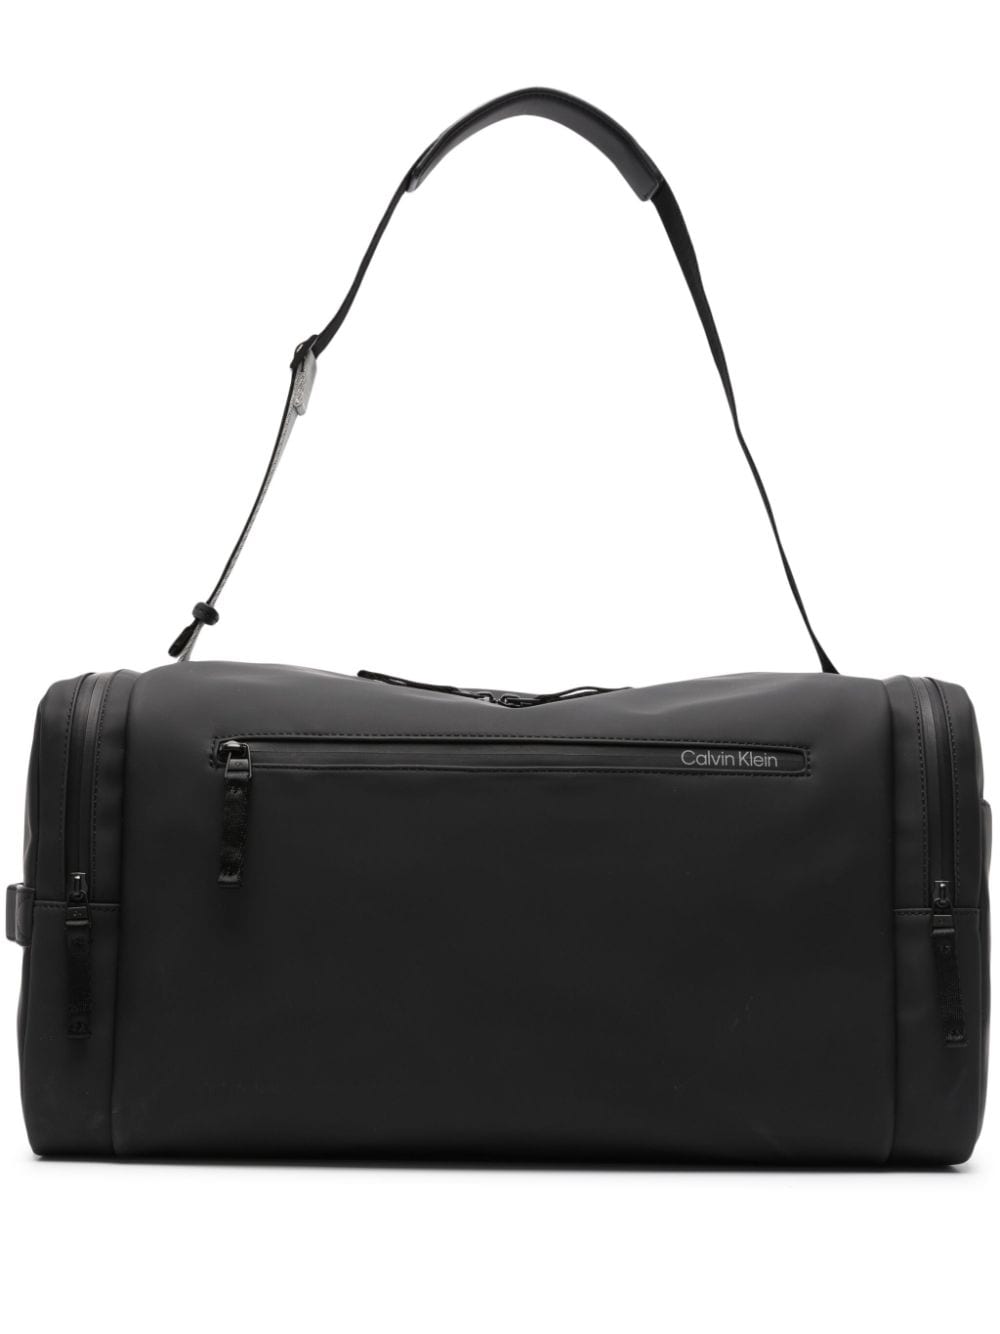 Calvin Klein Weekender Duffle Bag In Black